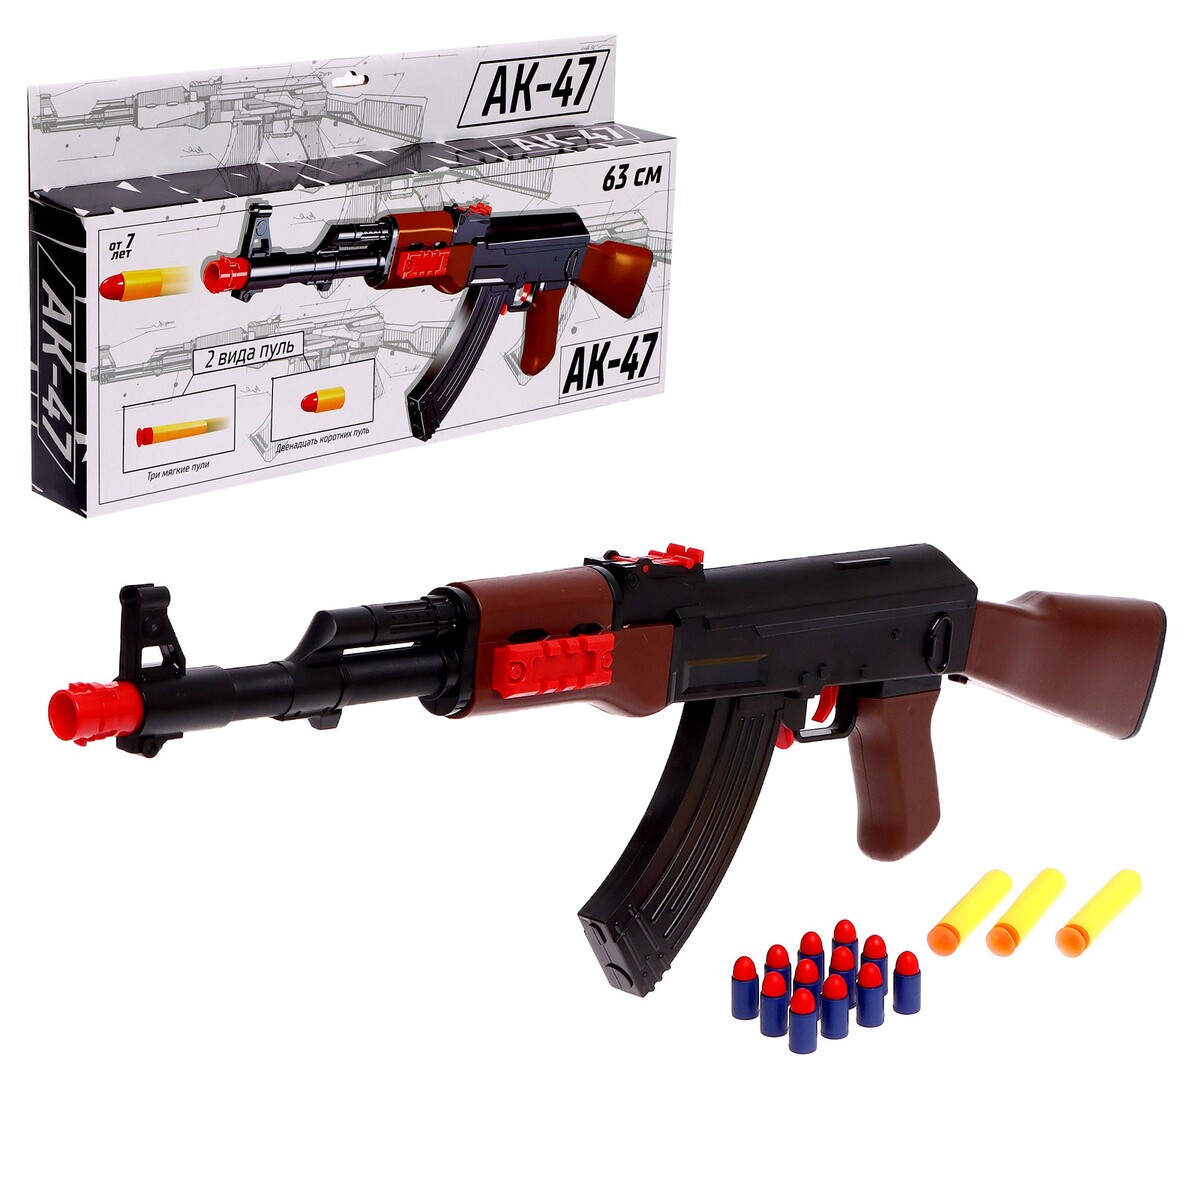 Автомат ак-47, стреляет мягкими пулями zecong toys автомат с мягкими пулями blazestorm zc7087